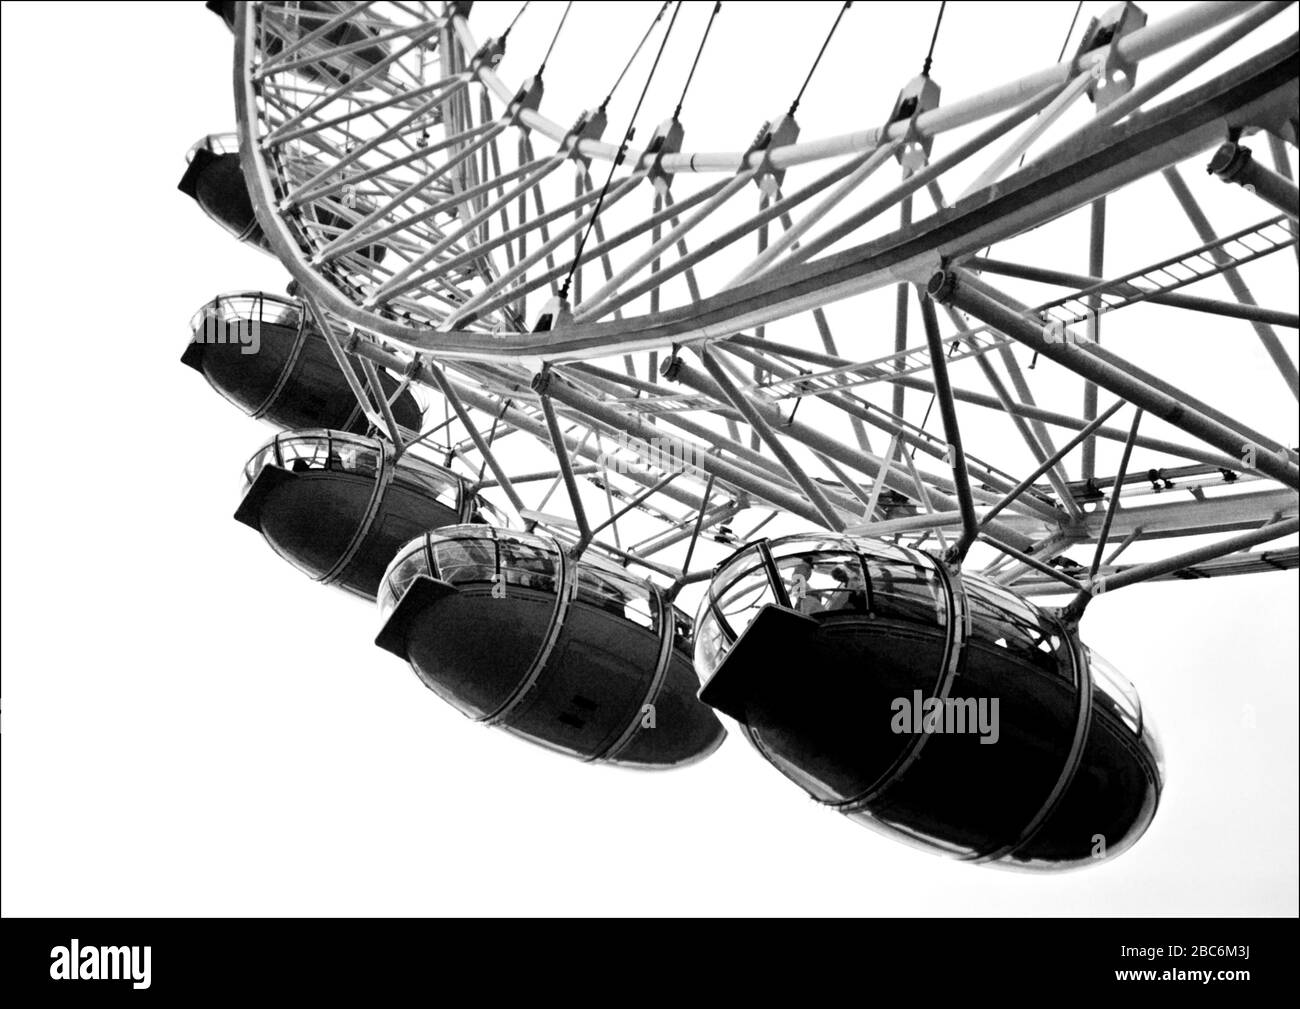 Gros plan noir et blanc sur les gousses du London Eye. Aussi connu sous le nom de Millennium Eye, l'oeil est une roue géante Ferris sur la rive sud de la Tamise. Banque D'Images